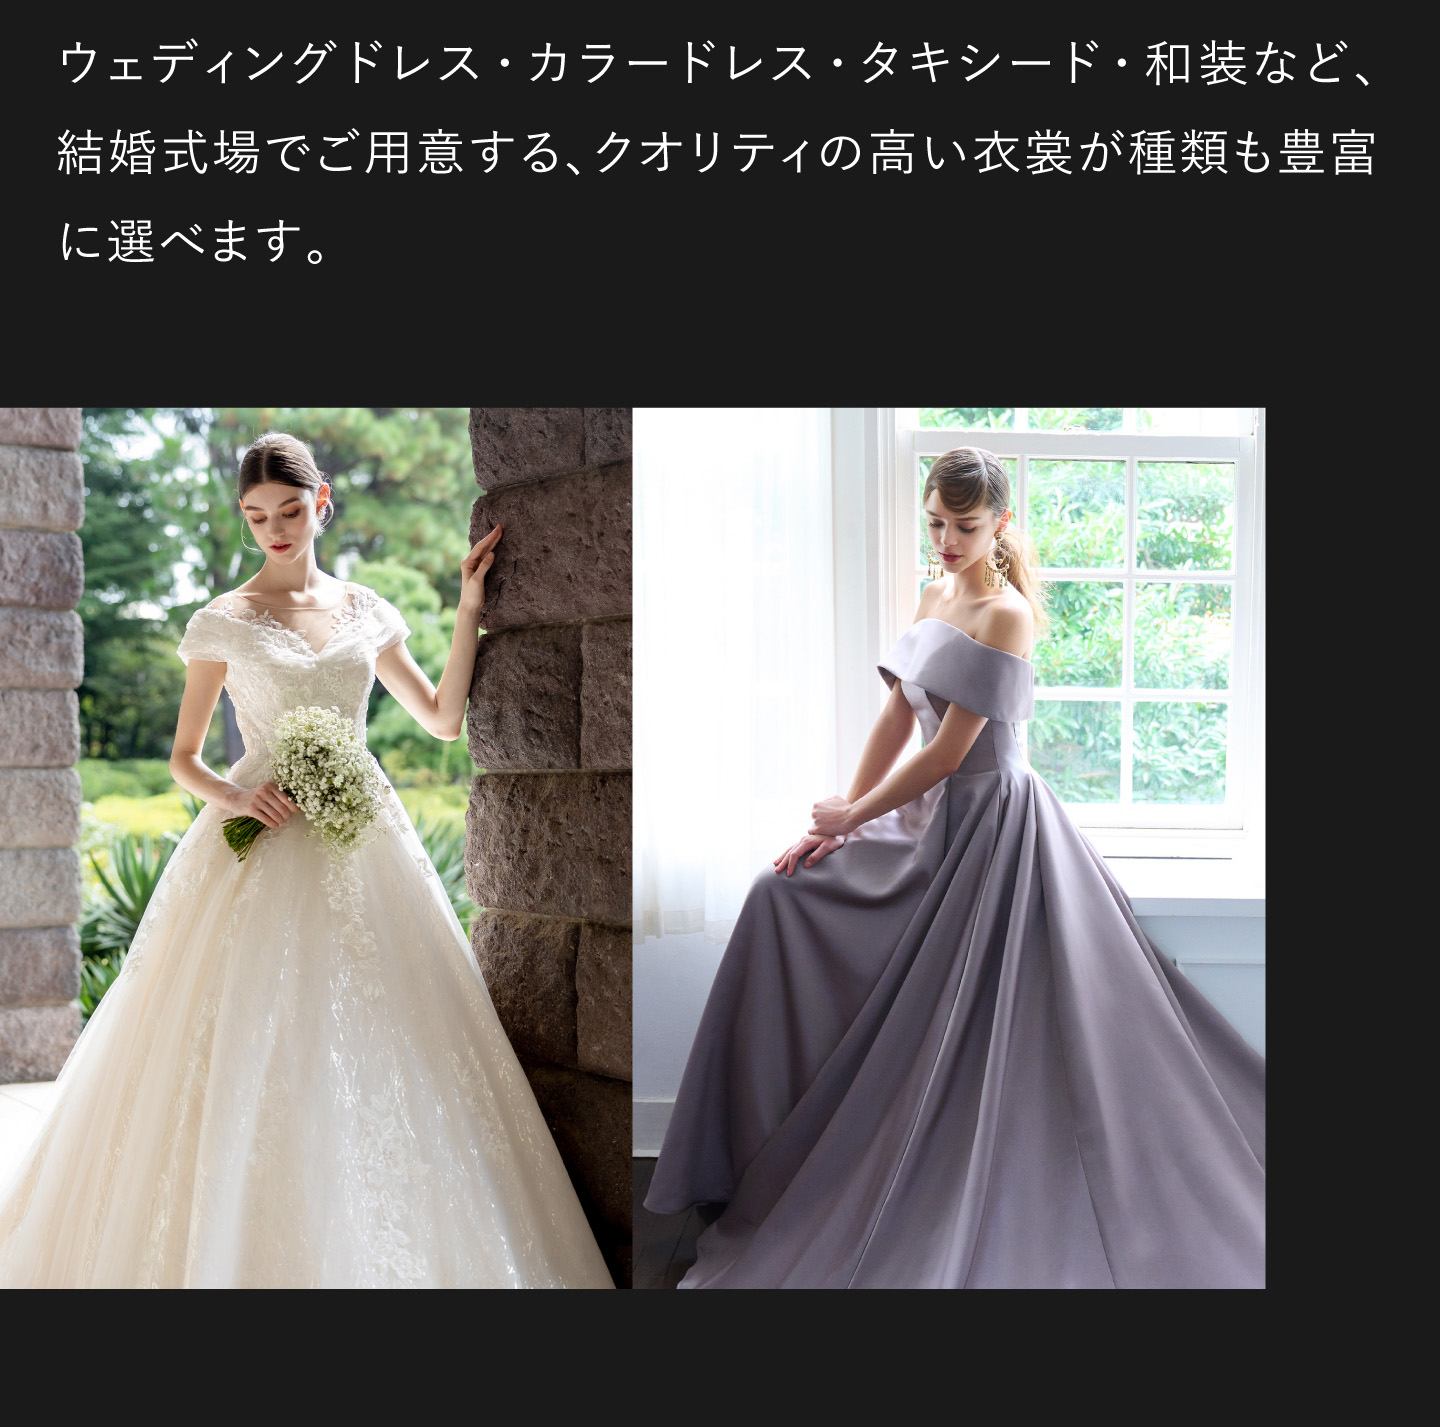 ウェディングドレス・カラードレス・タキシード・和装など、結婚式場でご用意する、クオリティの高い衣裳が種類も豊富に選べます。